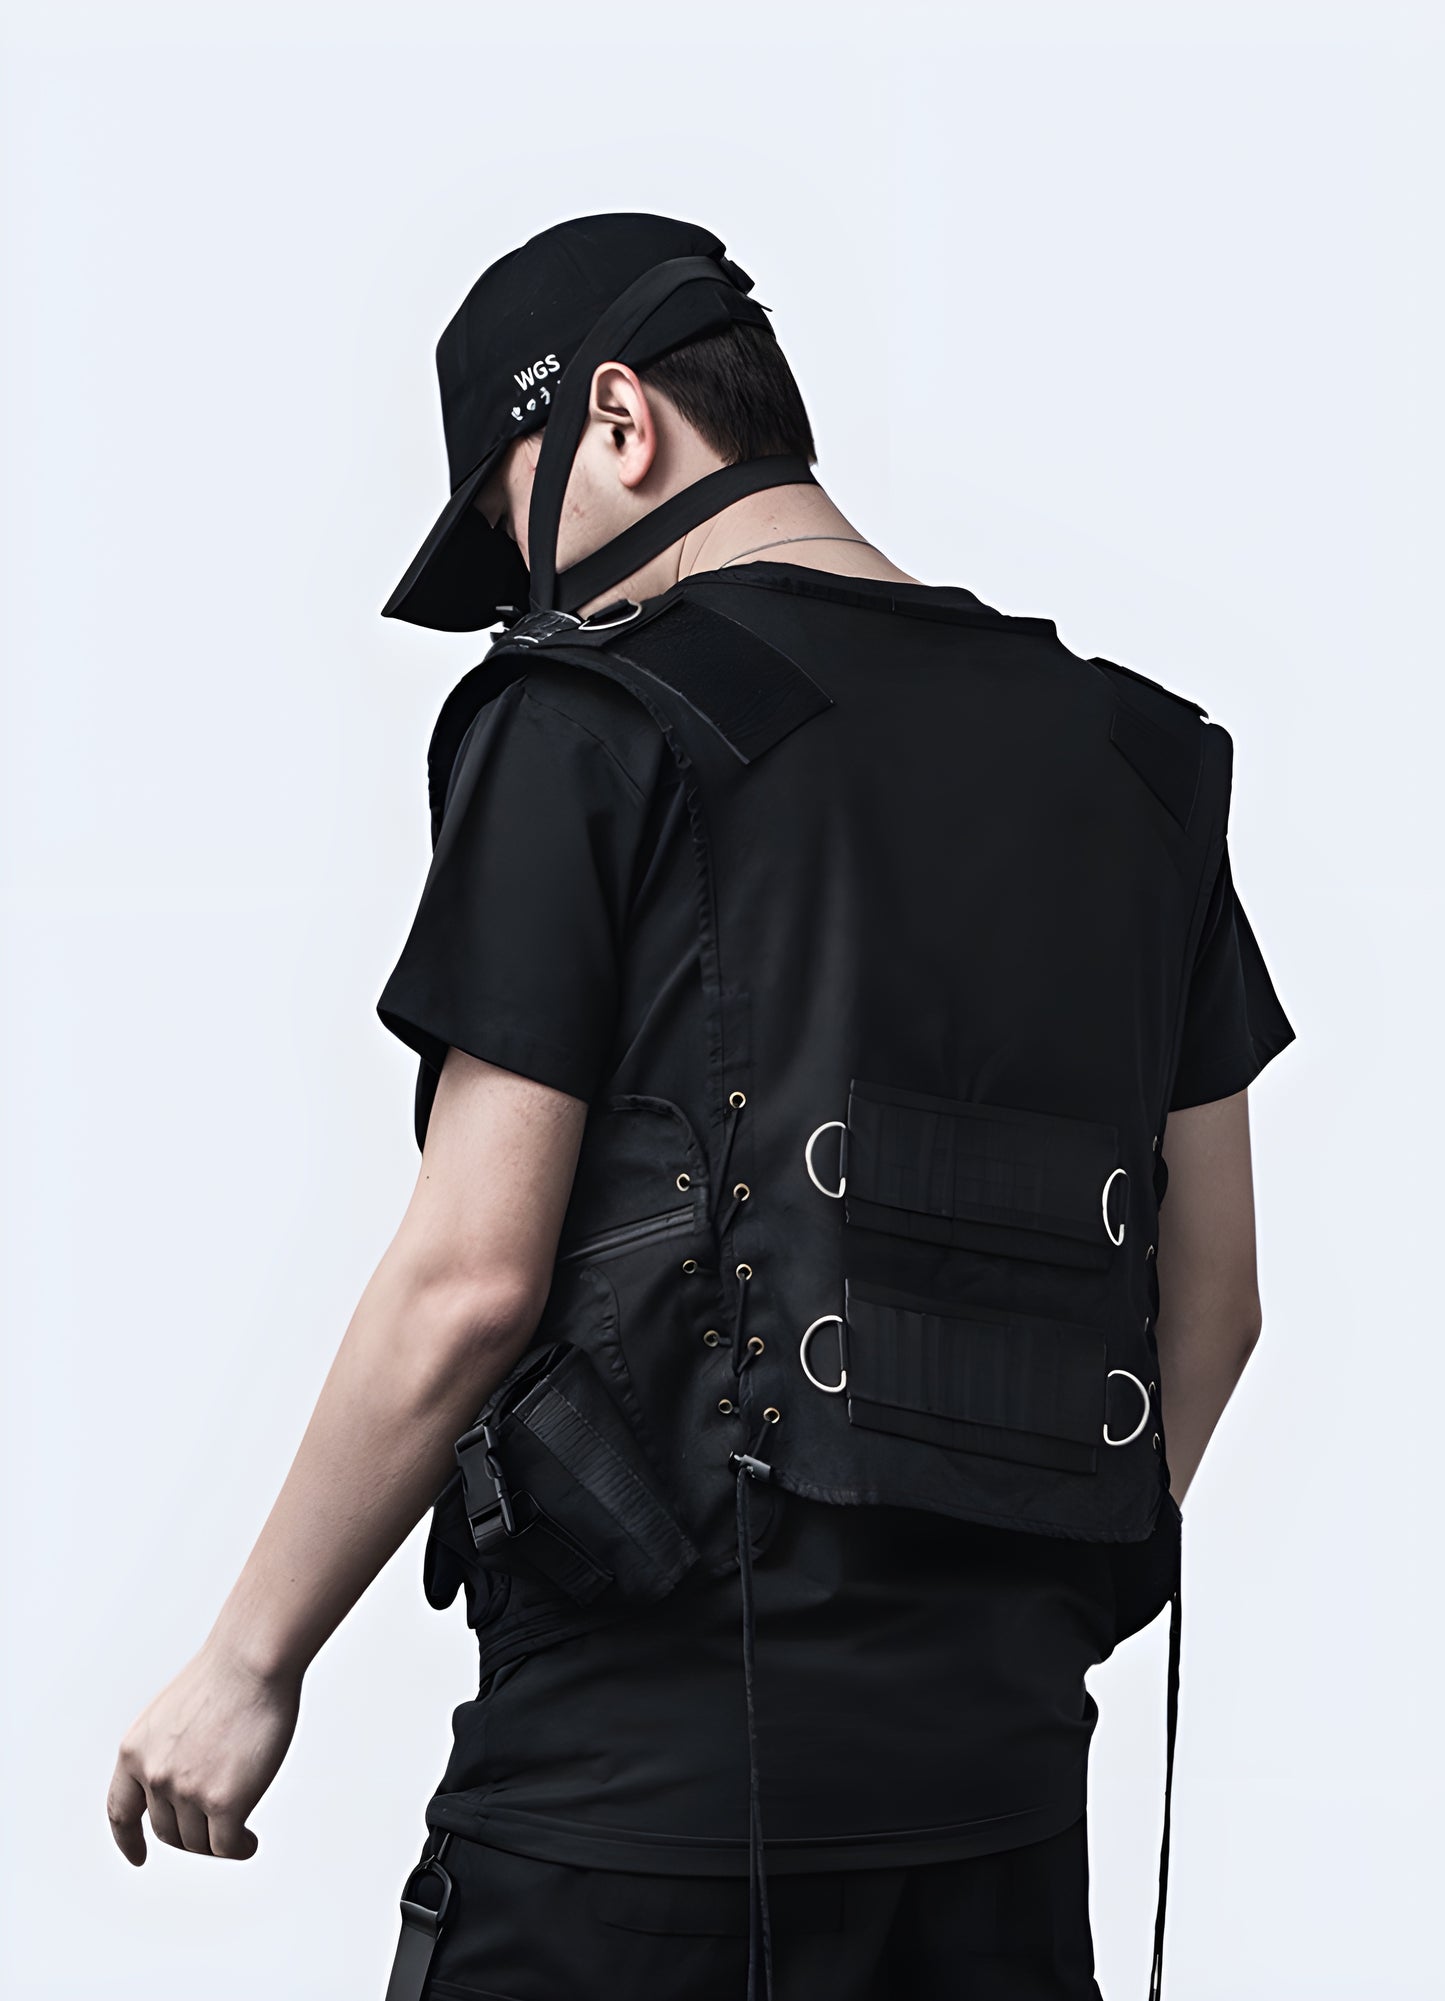 Men wearing black futuristic techwear vest back view. 